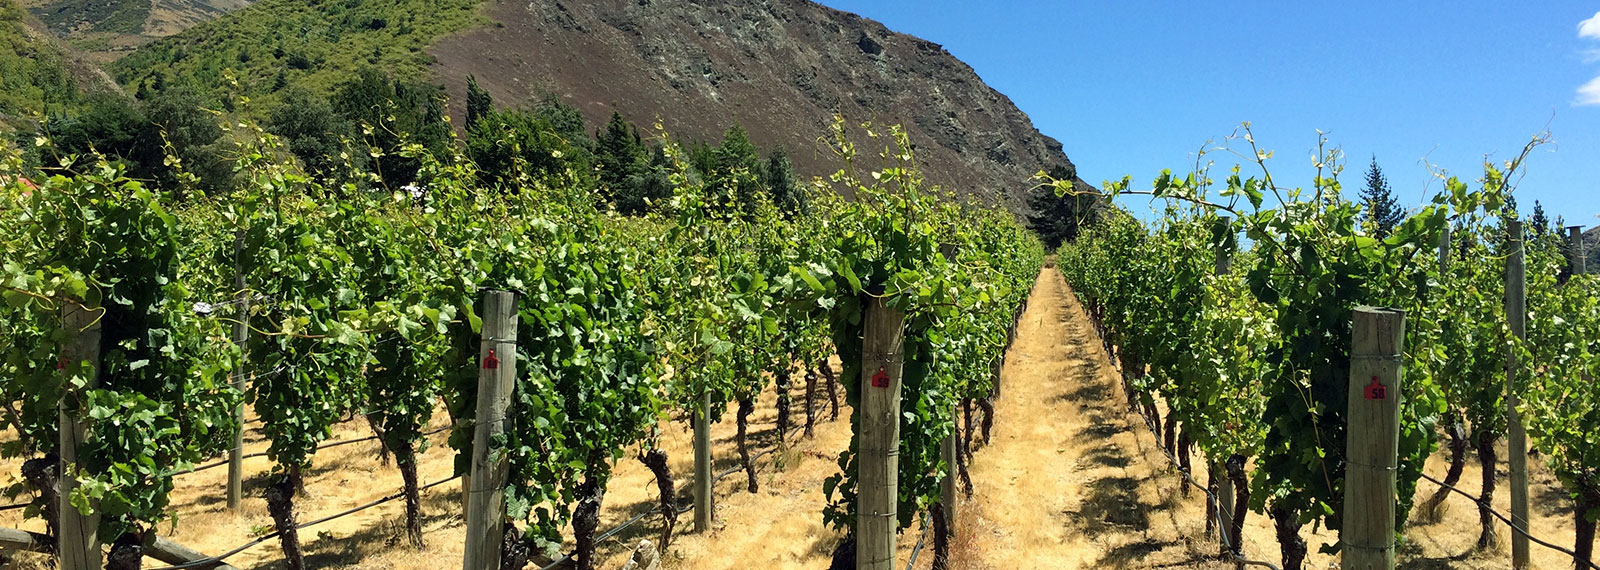 Počas dovolenky na Novom Zélande môžeš ochutnať vynikajúce miestne vína